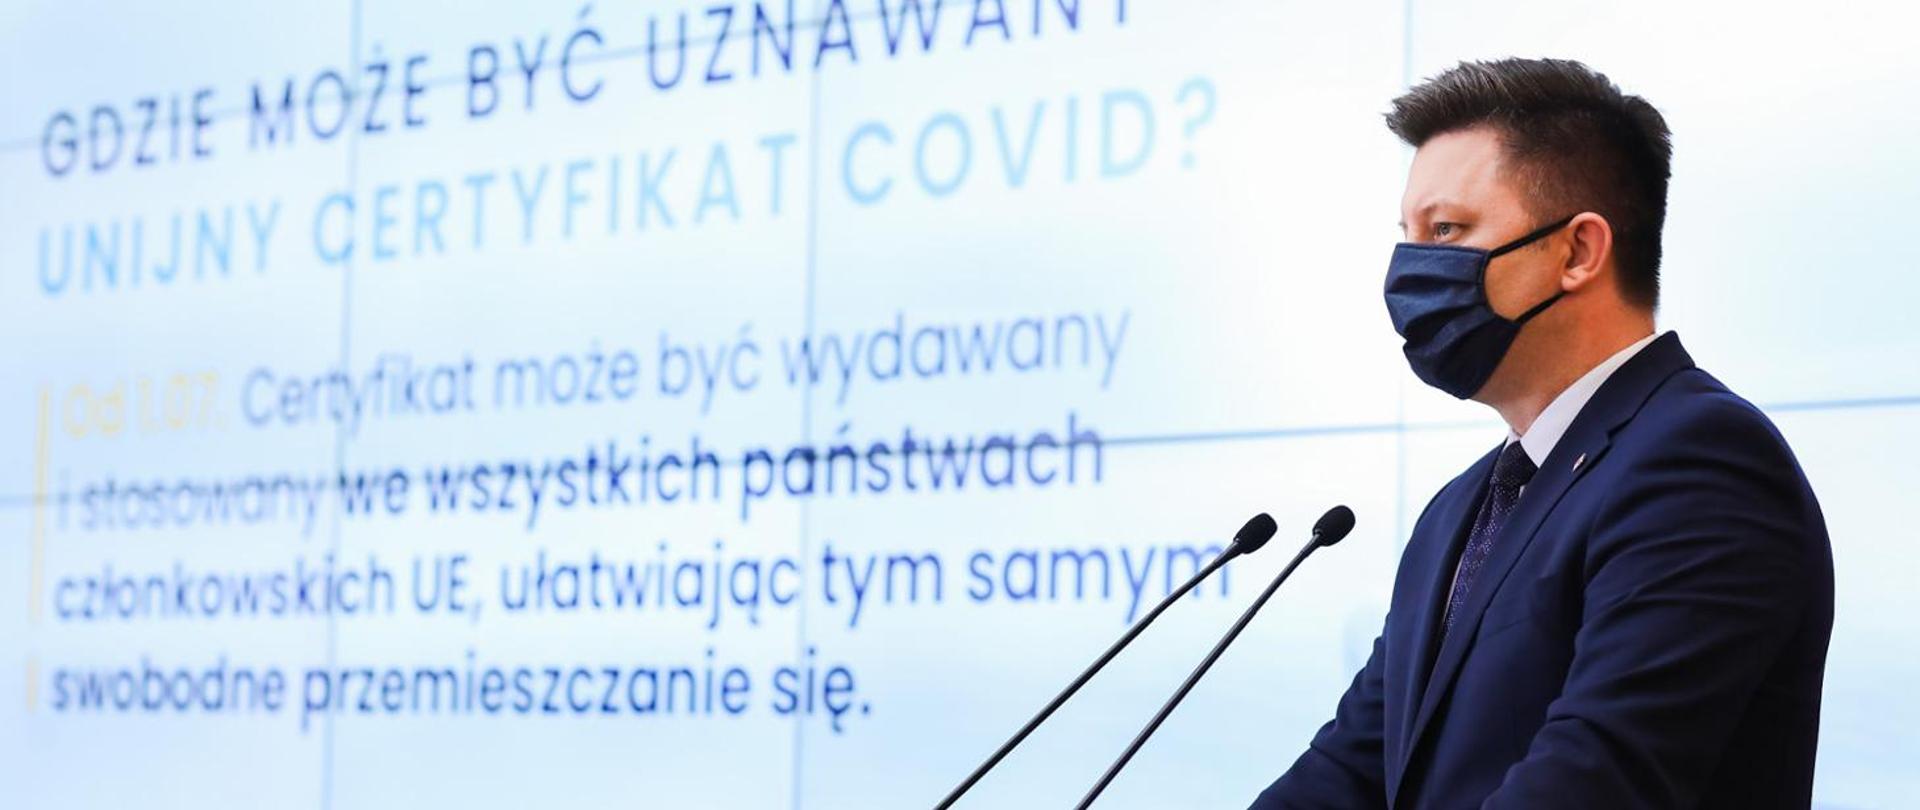 Na pierwszym planie Minister Michał Dworczyk. Na drugim planie prezentacja dotycząca unijnego certyfikatu COVID